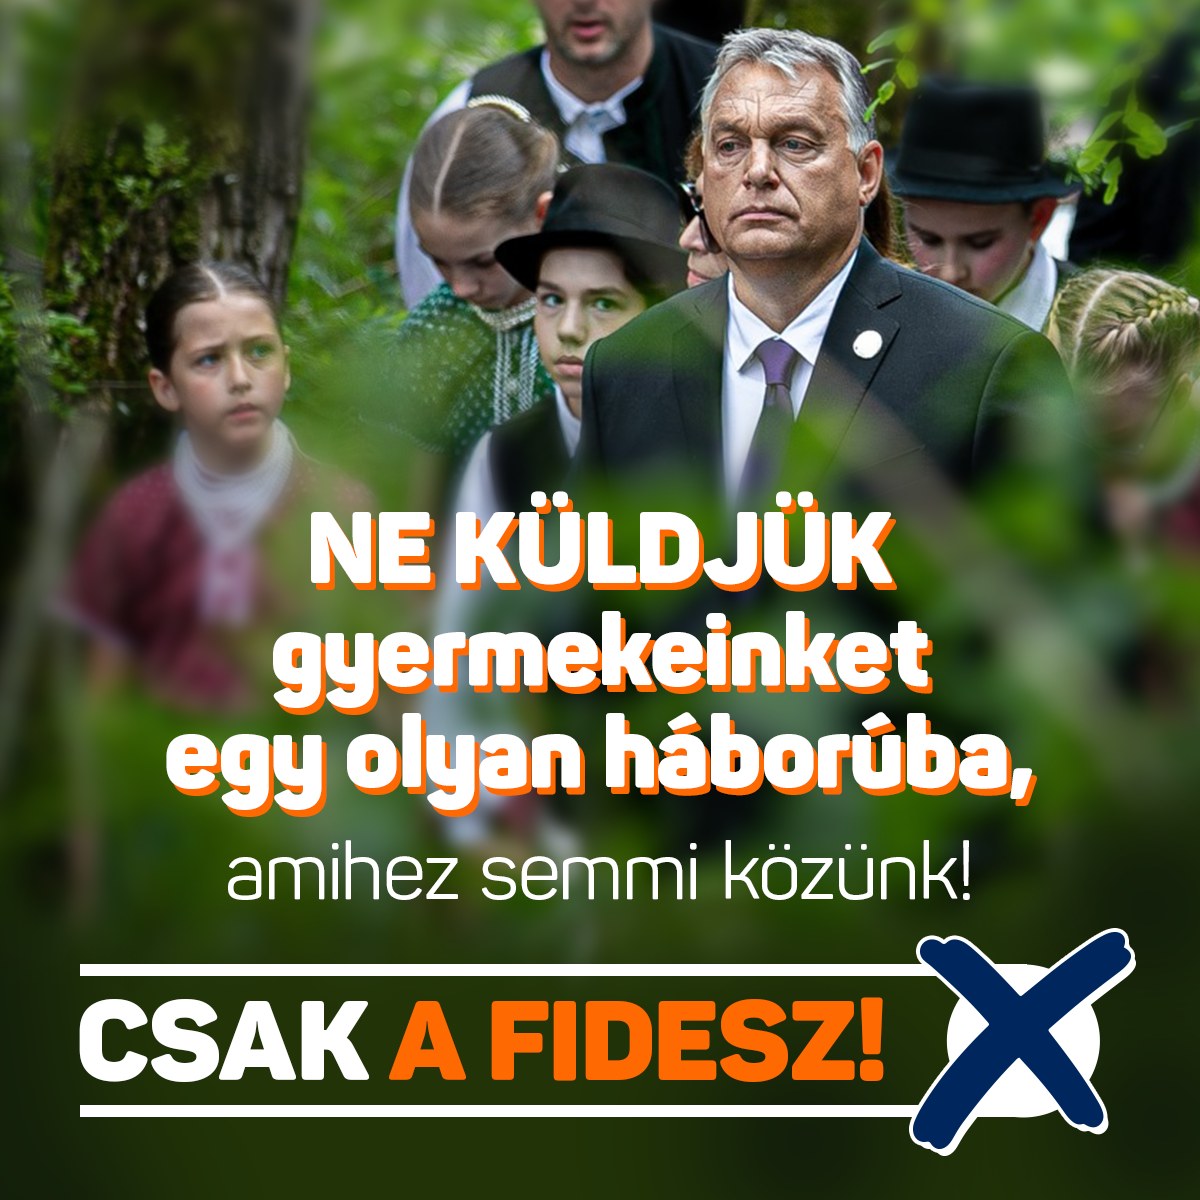 A Fidesz megcsinálta: végül csak sikerült összekötni az ellenzék „háborúpártiságát” a gyerekek „veszélyeztetésévél”